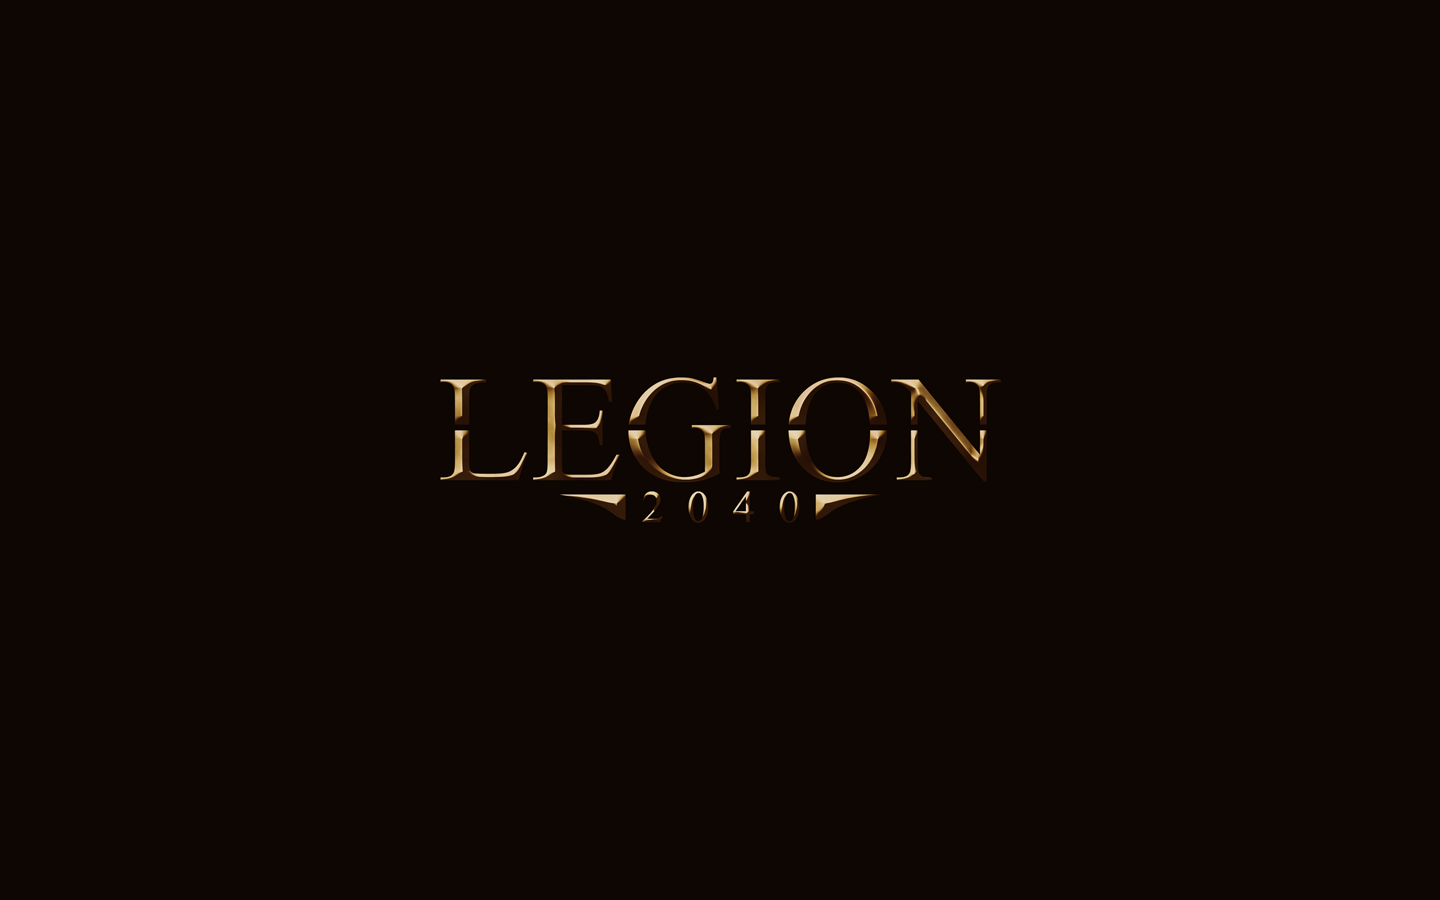 legion movie wallpaper